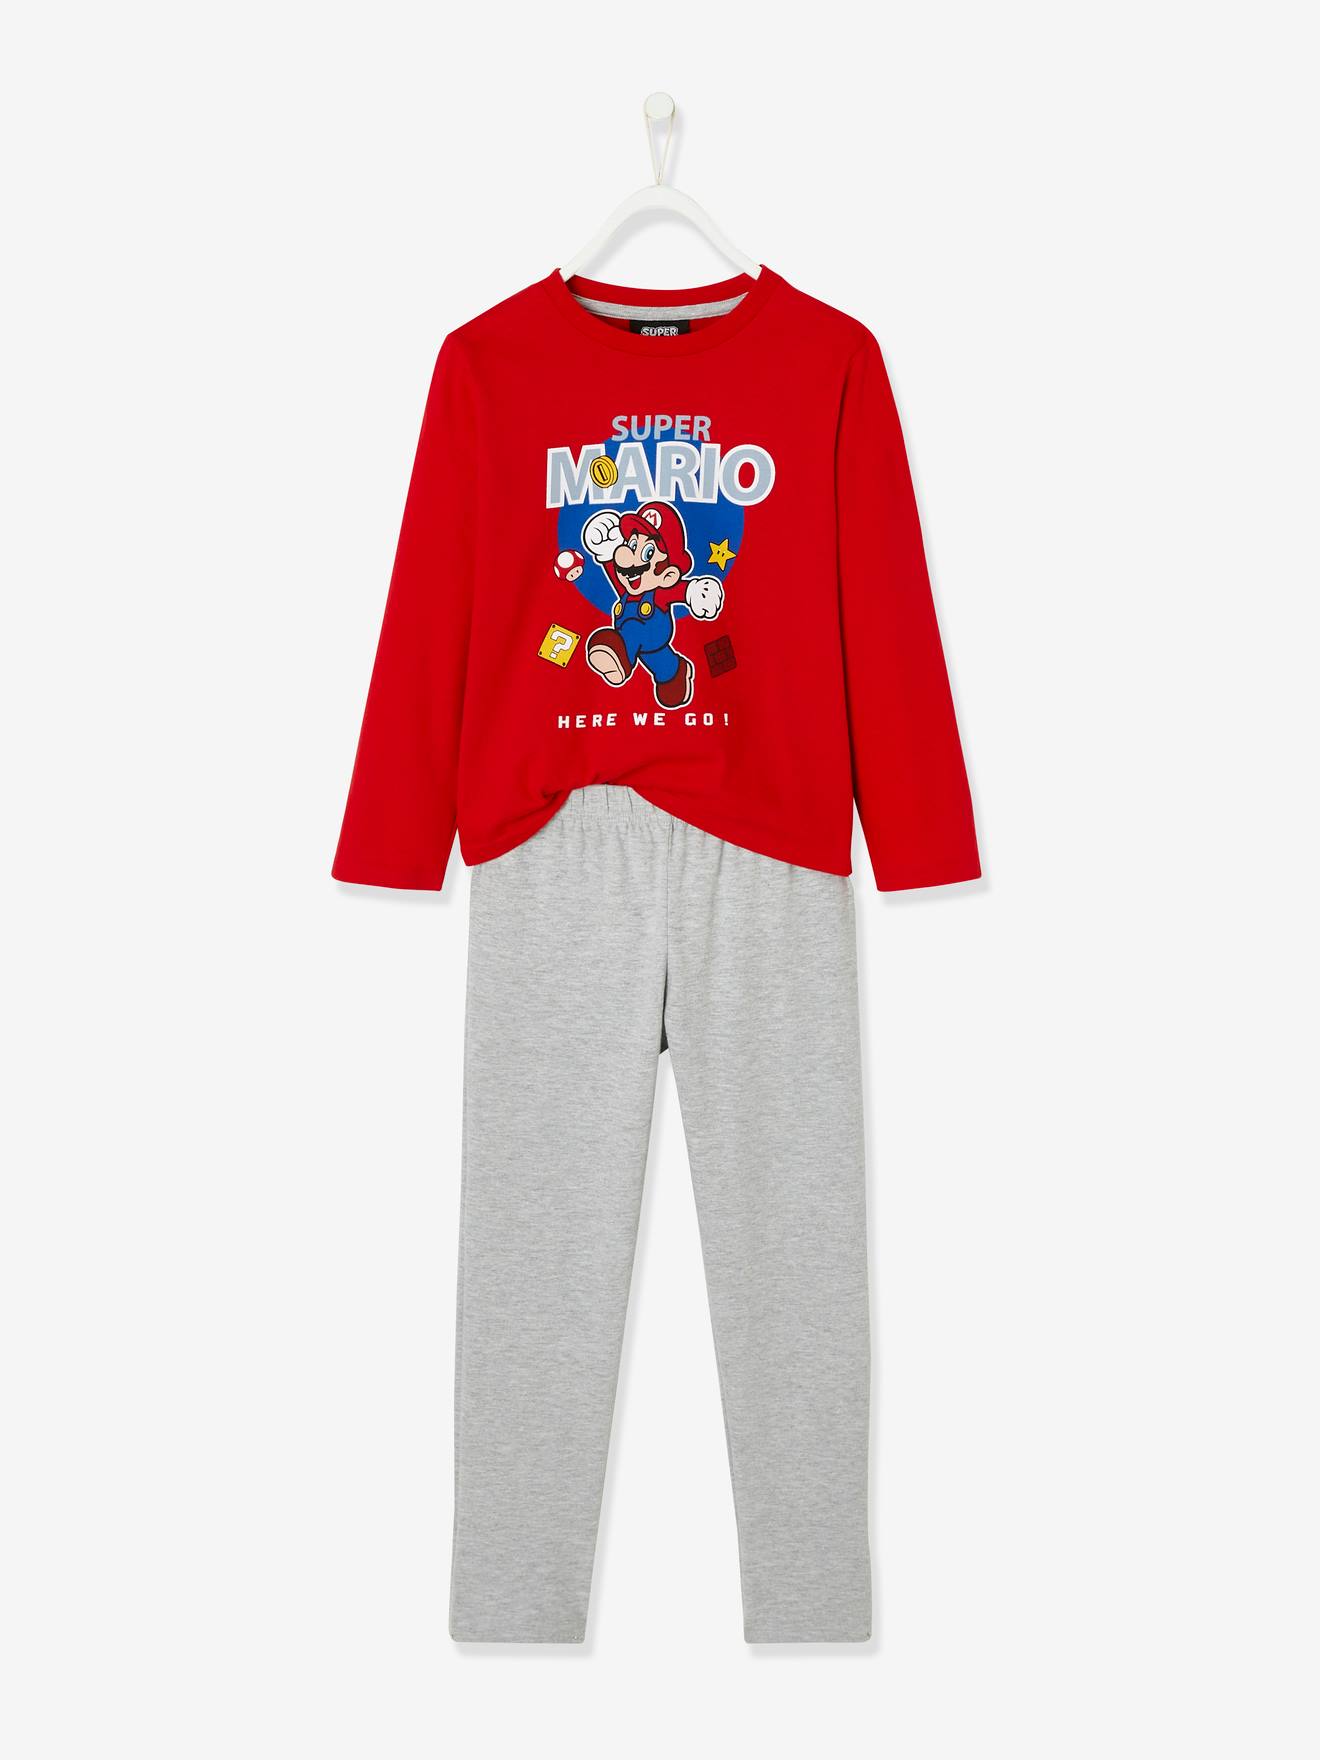 Jongenspyjama Super Mario® rode bovenkant/grijze onderkan